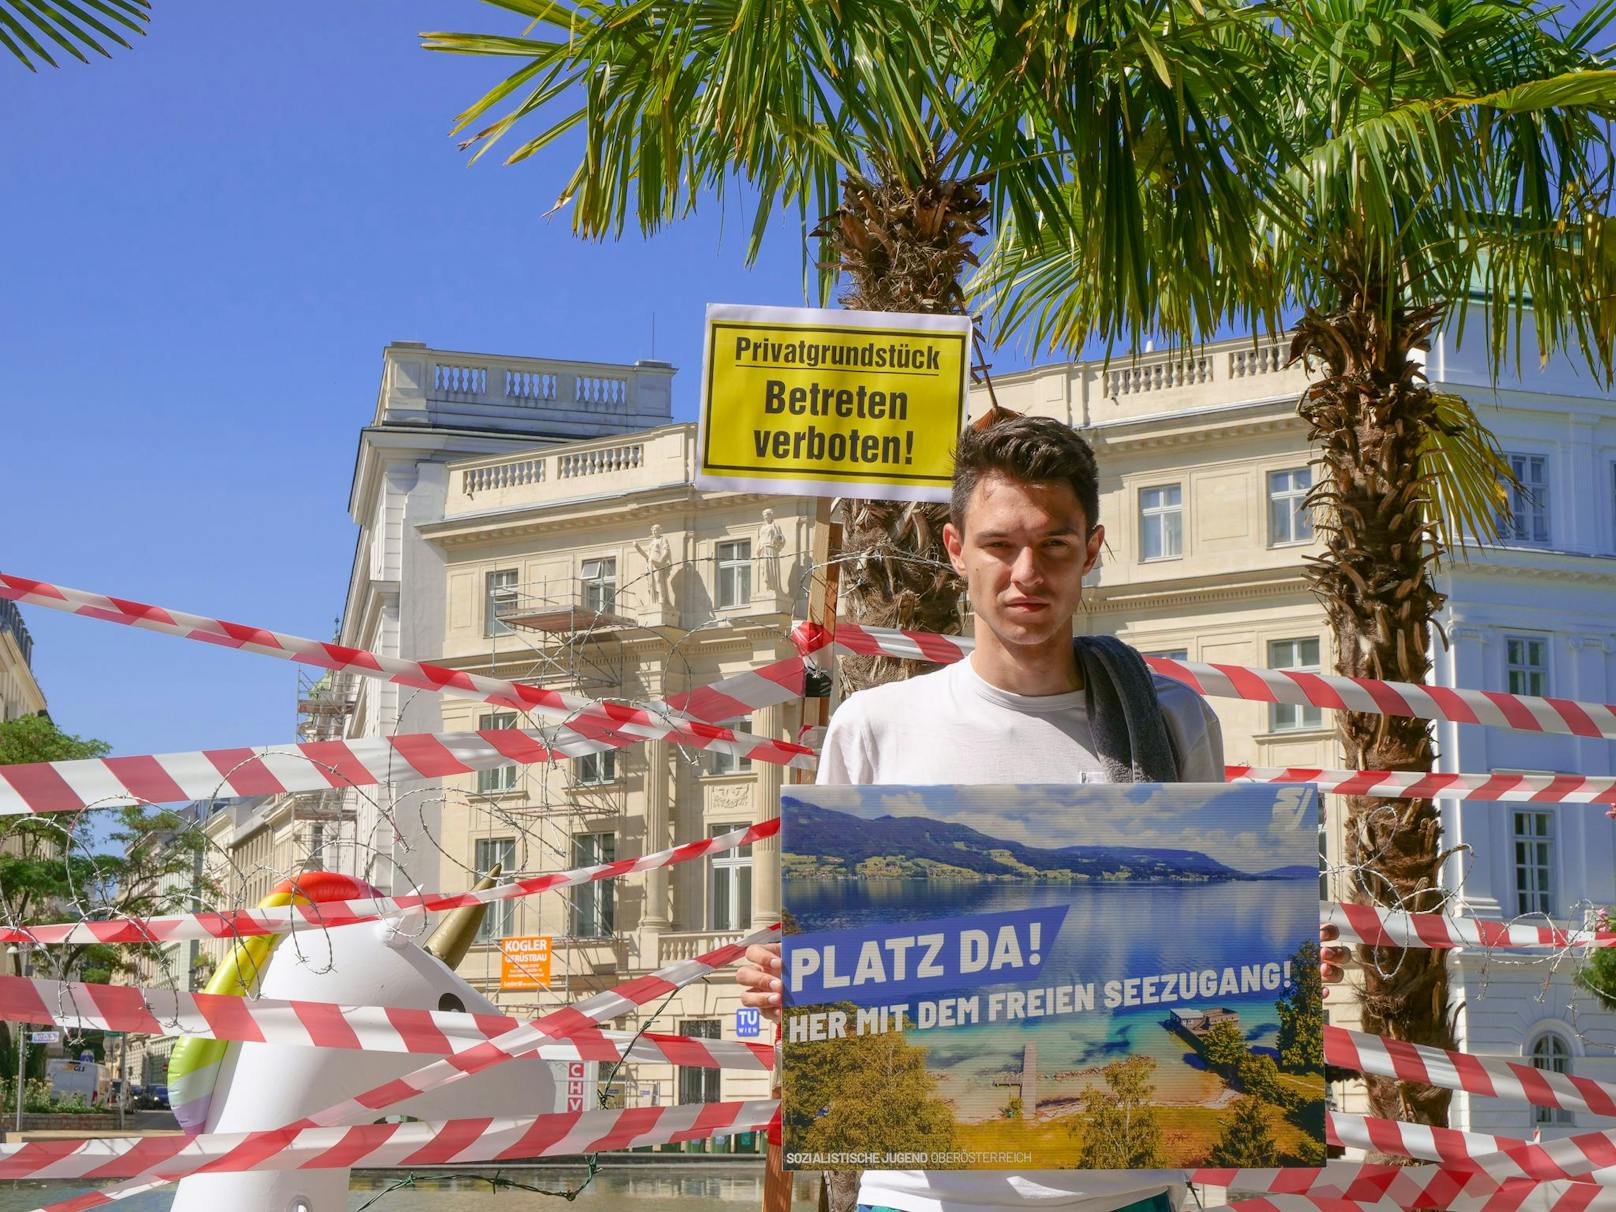 Die Sozialistische Jugend sperrte bei einer Medienaktion den Karlsplatz-Teich, um auf Forderungen für mehr freie Seezugänge in Österreich aufmerksam zu machen.